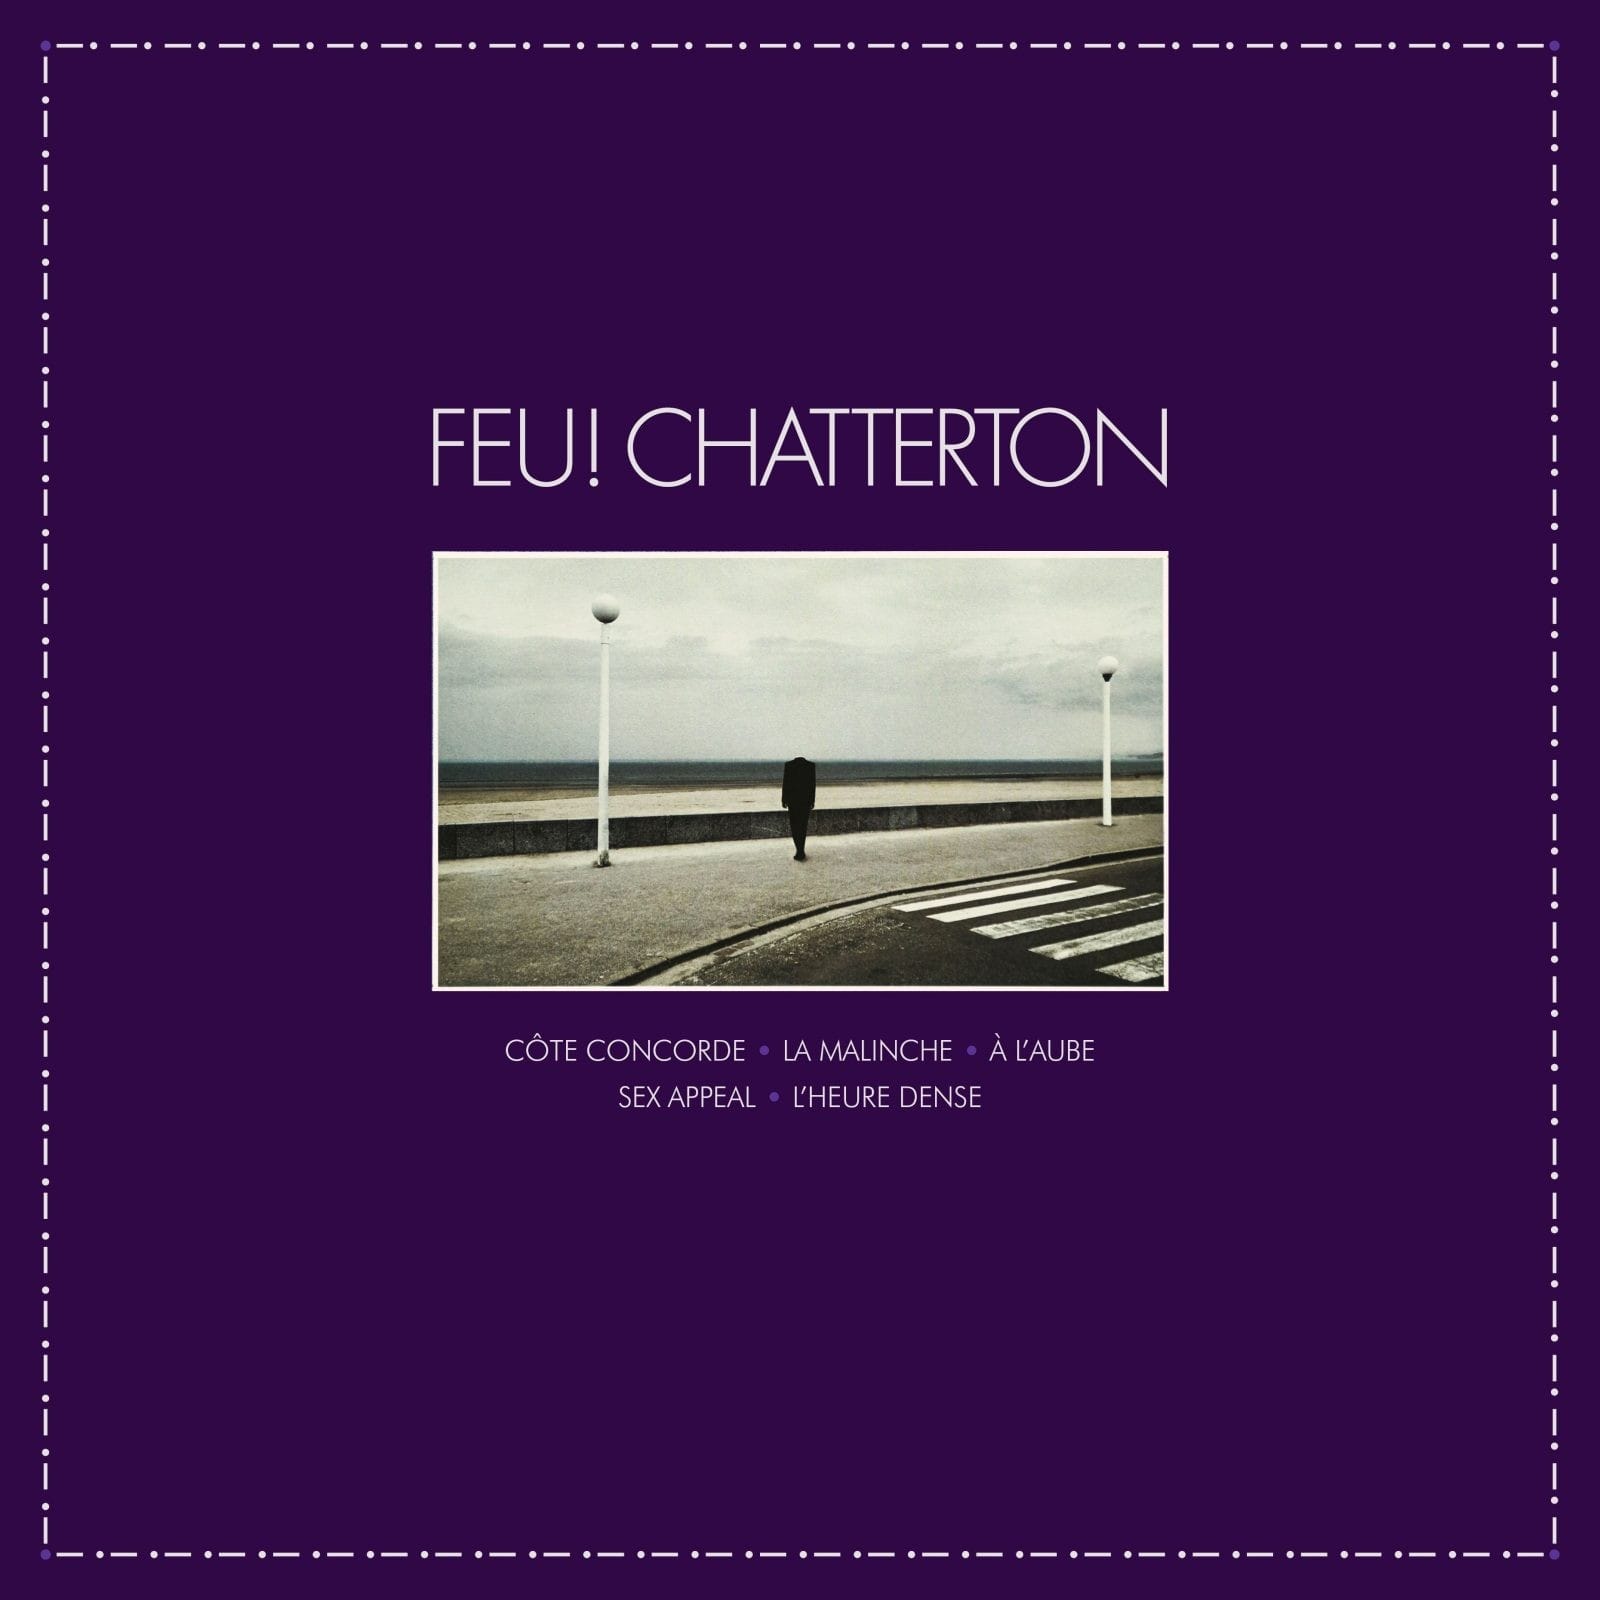 Feu! Chatterton, coup de semonce dans la pop Francaise 8